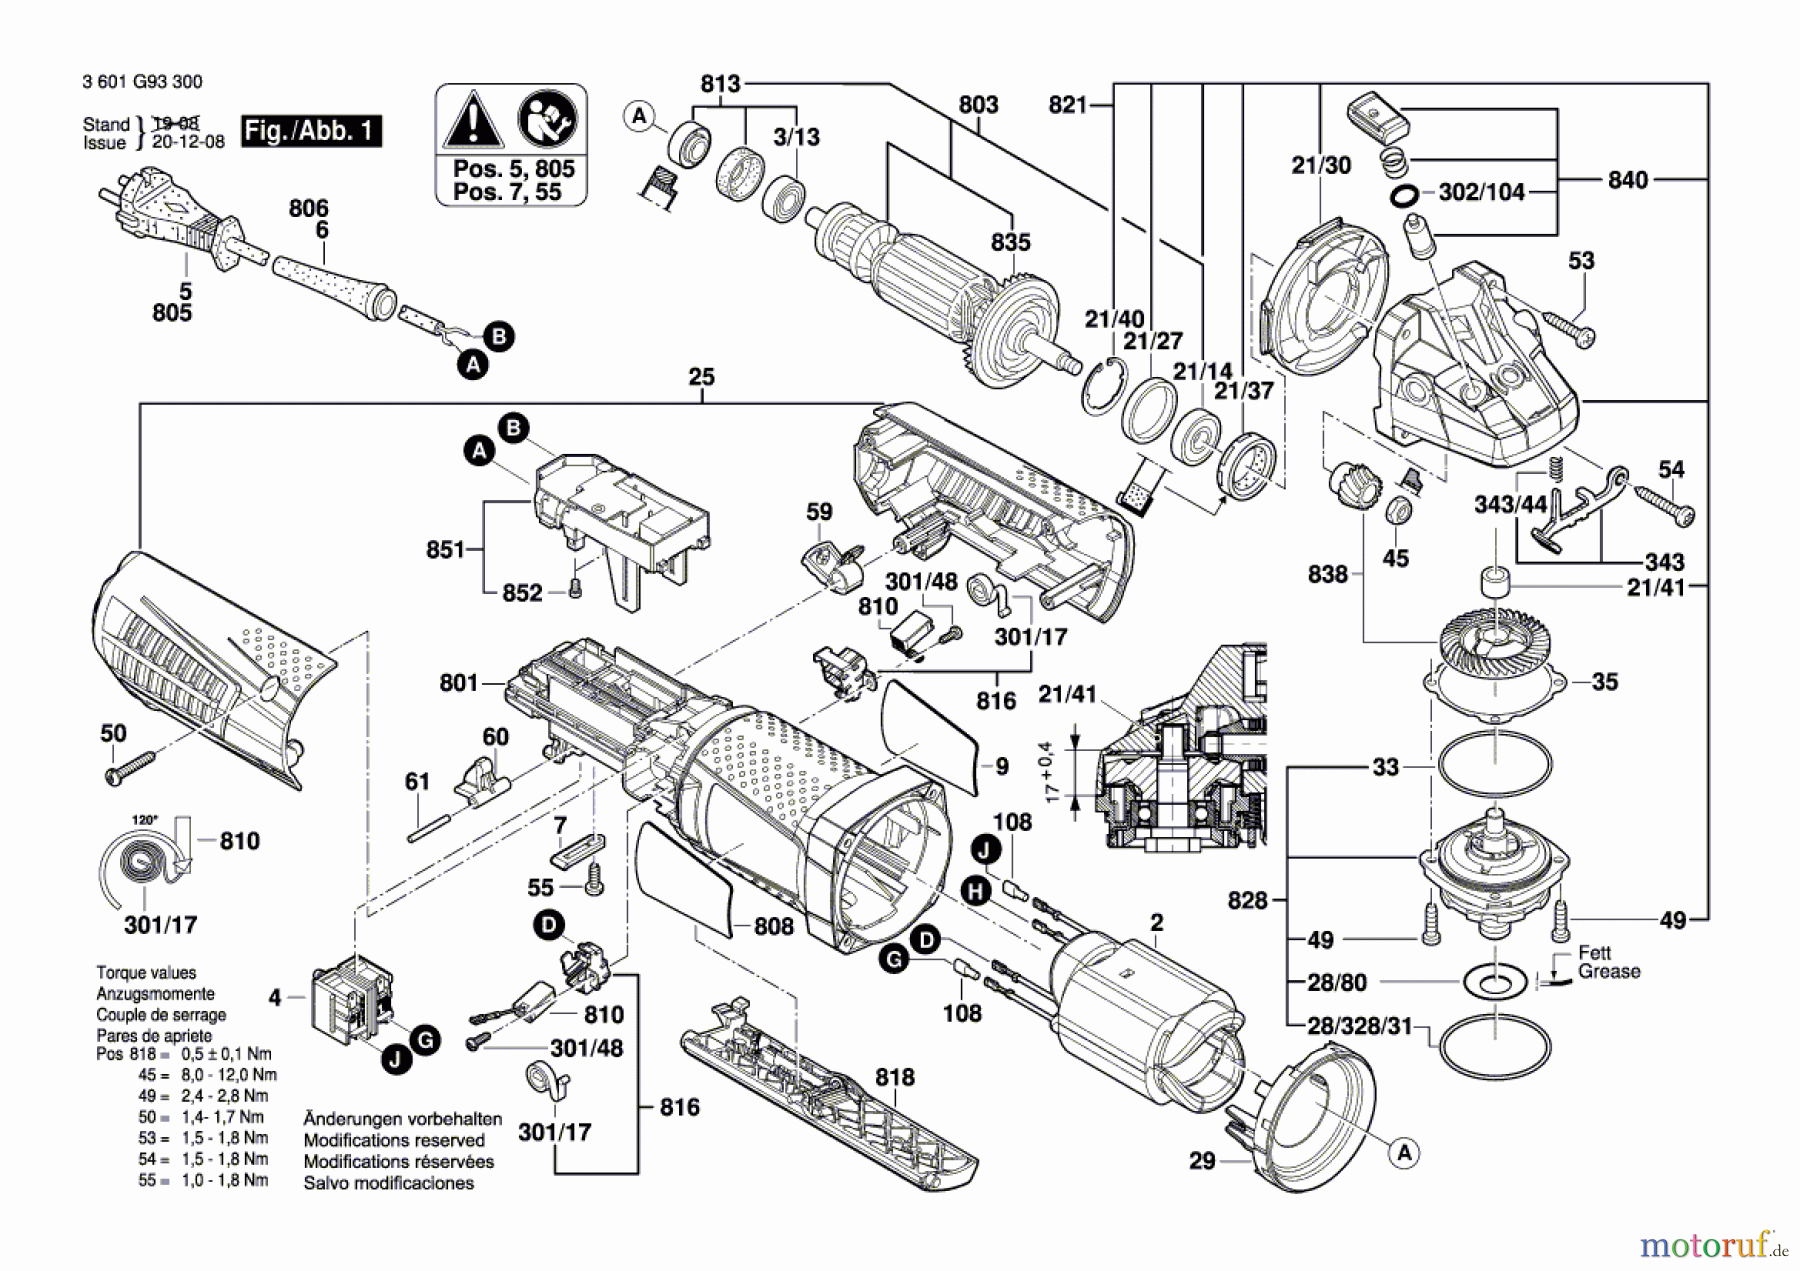  Bosch Werkzeug Winkelschleifer GWS 12-125 CIPX Seite 1